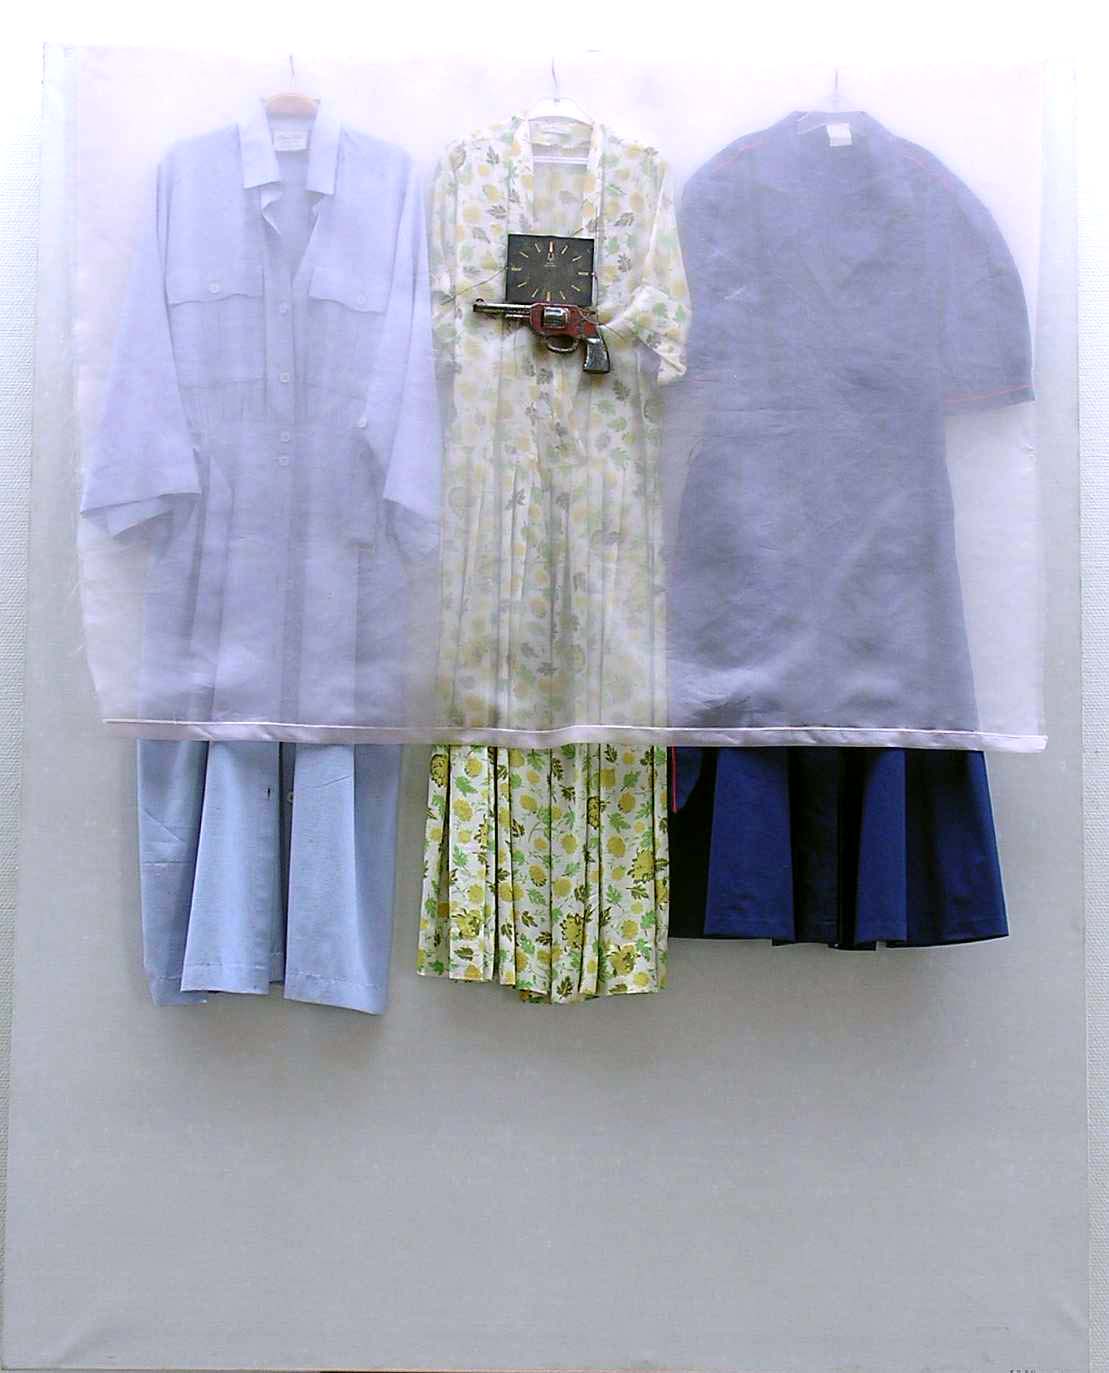 fotografi av tre klänningar som hänger på galgar och är övertäckta av ett tunt tyg, på tyget finns en pistol monterad